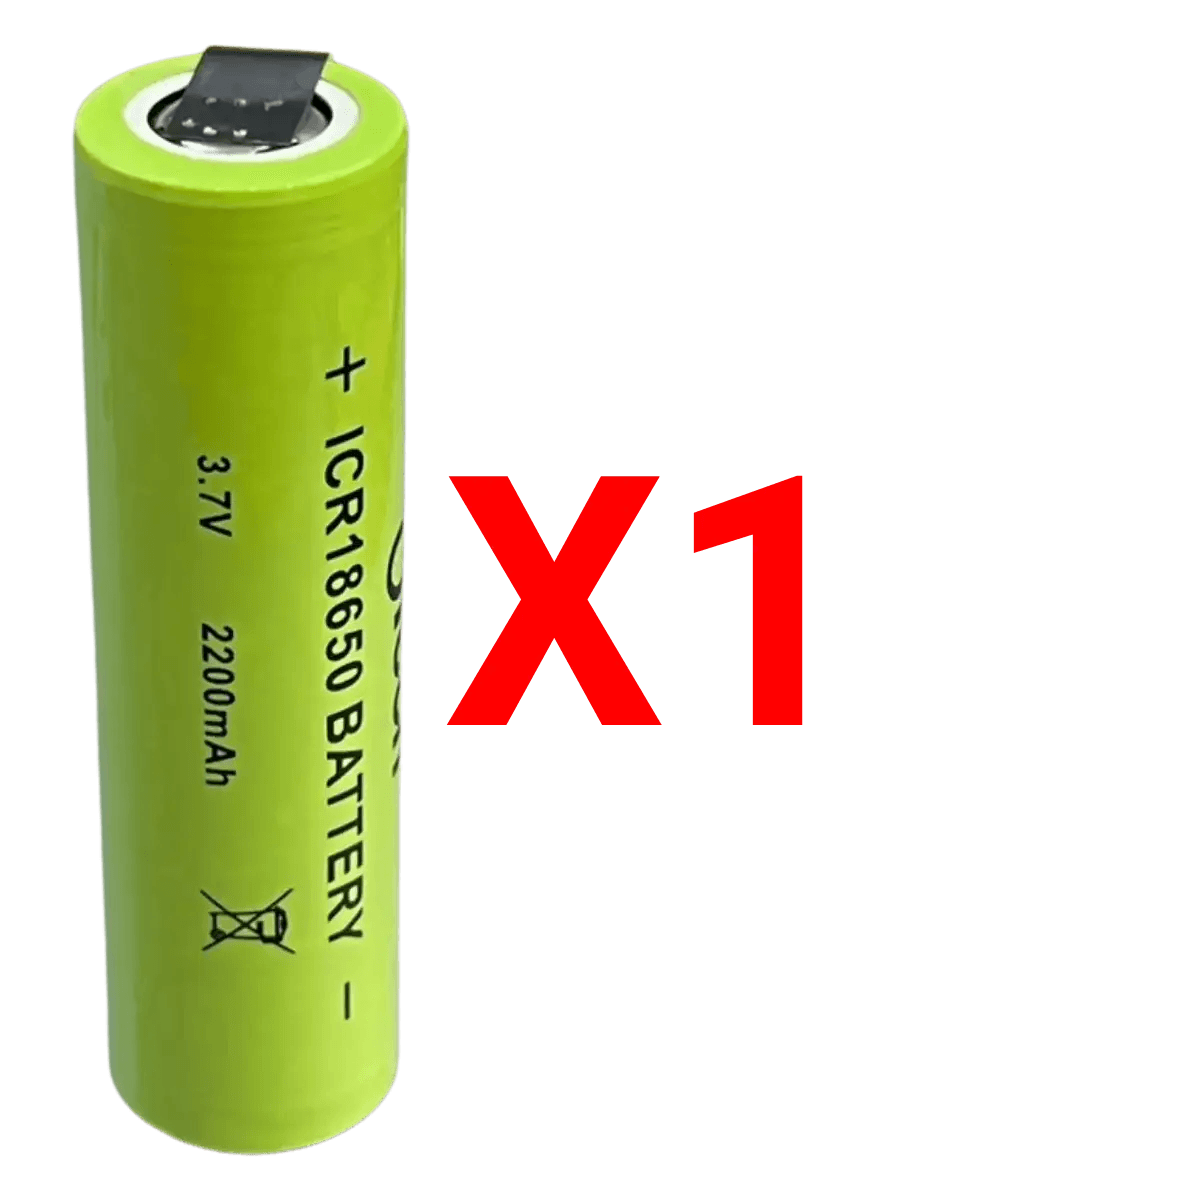 Batterie ICR18650 Li-ion 3.7V 2200mAh avec languettes à souder - Accessoires Energie